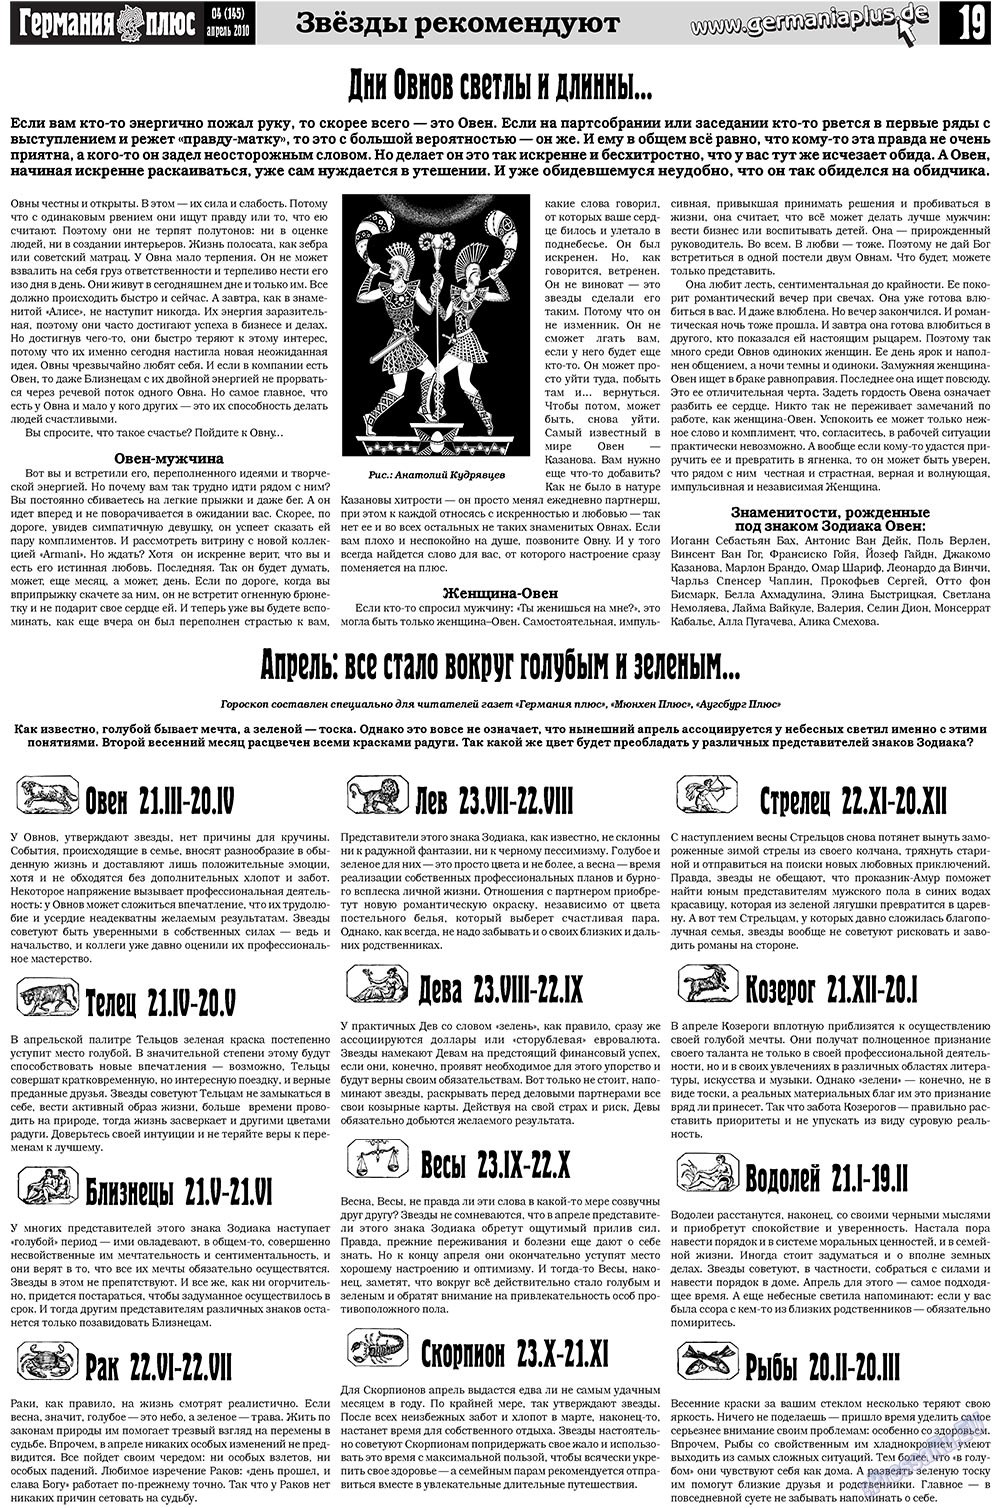 Германия плюс (газета). 2010 год, номер 4, стр. 19